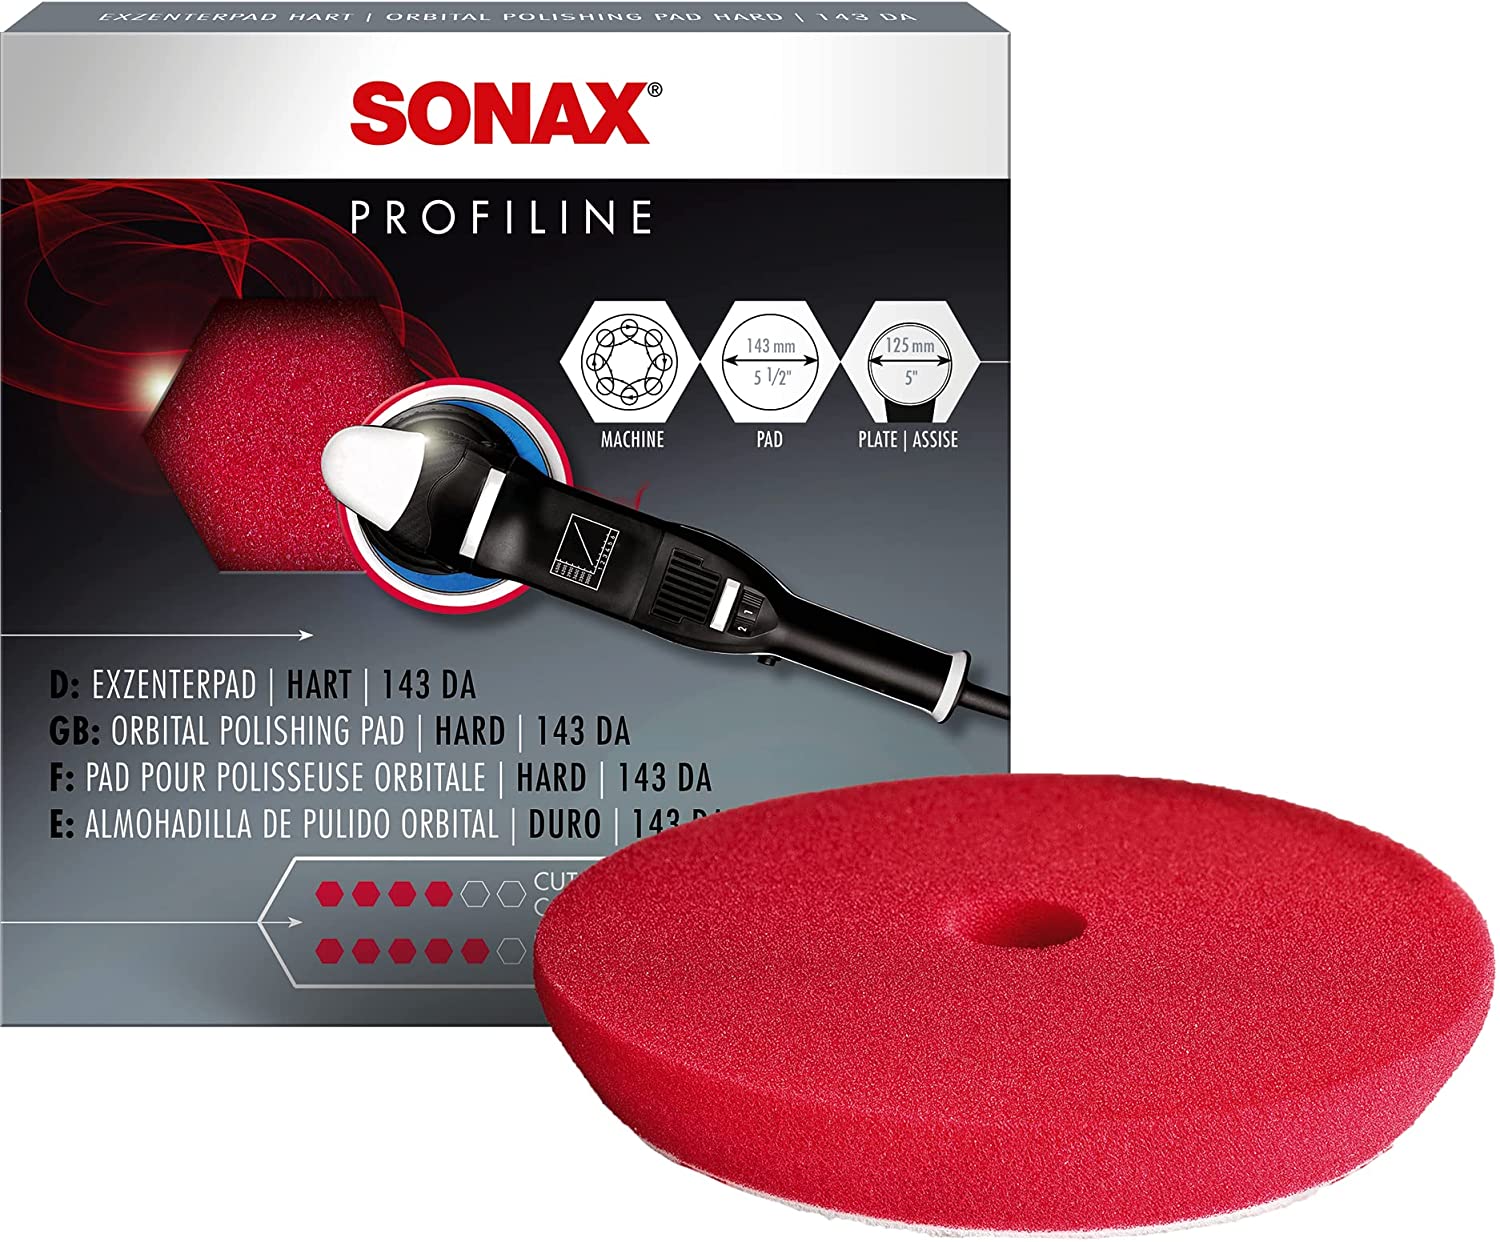 Sonax Polierschwamm Rot 143 Dual Action ExzenterPad Hart